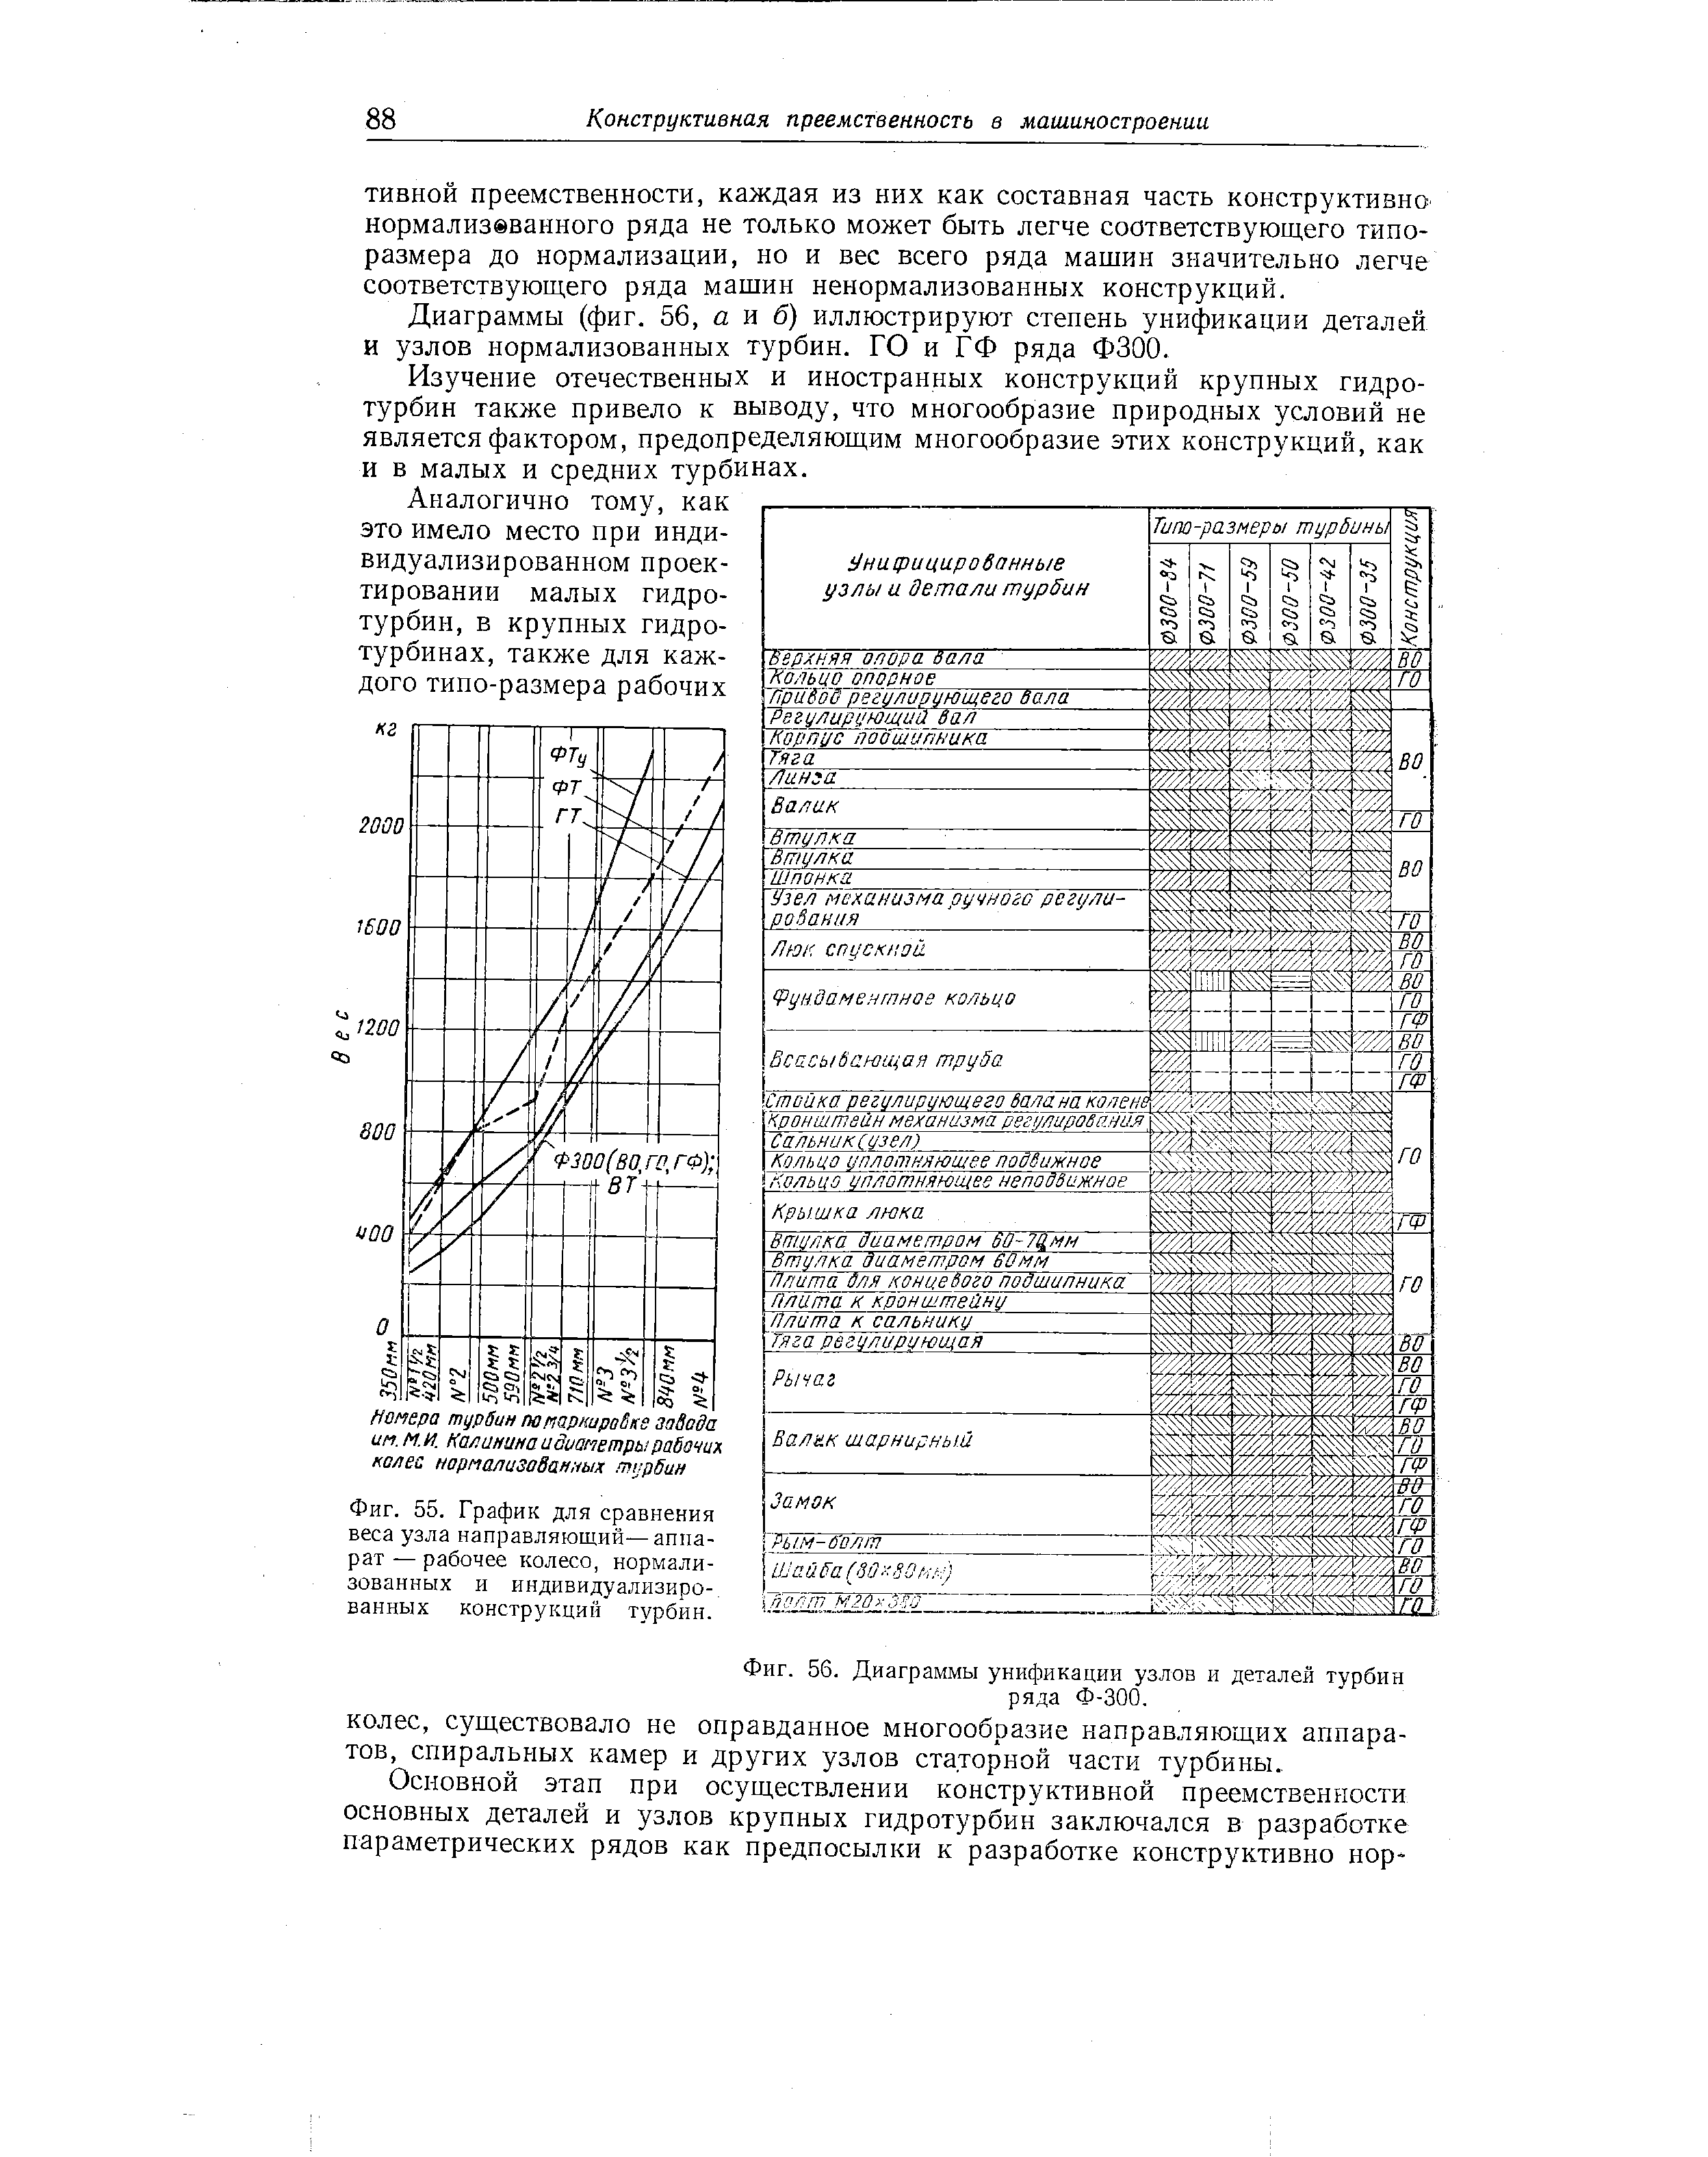 Фиг. 56. Диаграммы унификации узлов и деталей турбин ряда Ф-300.
